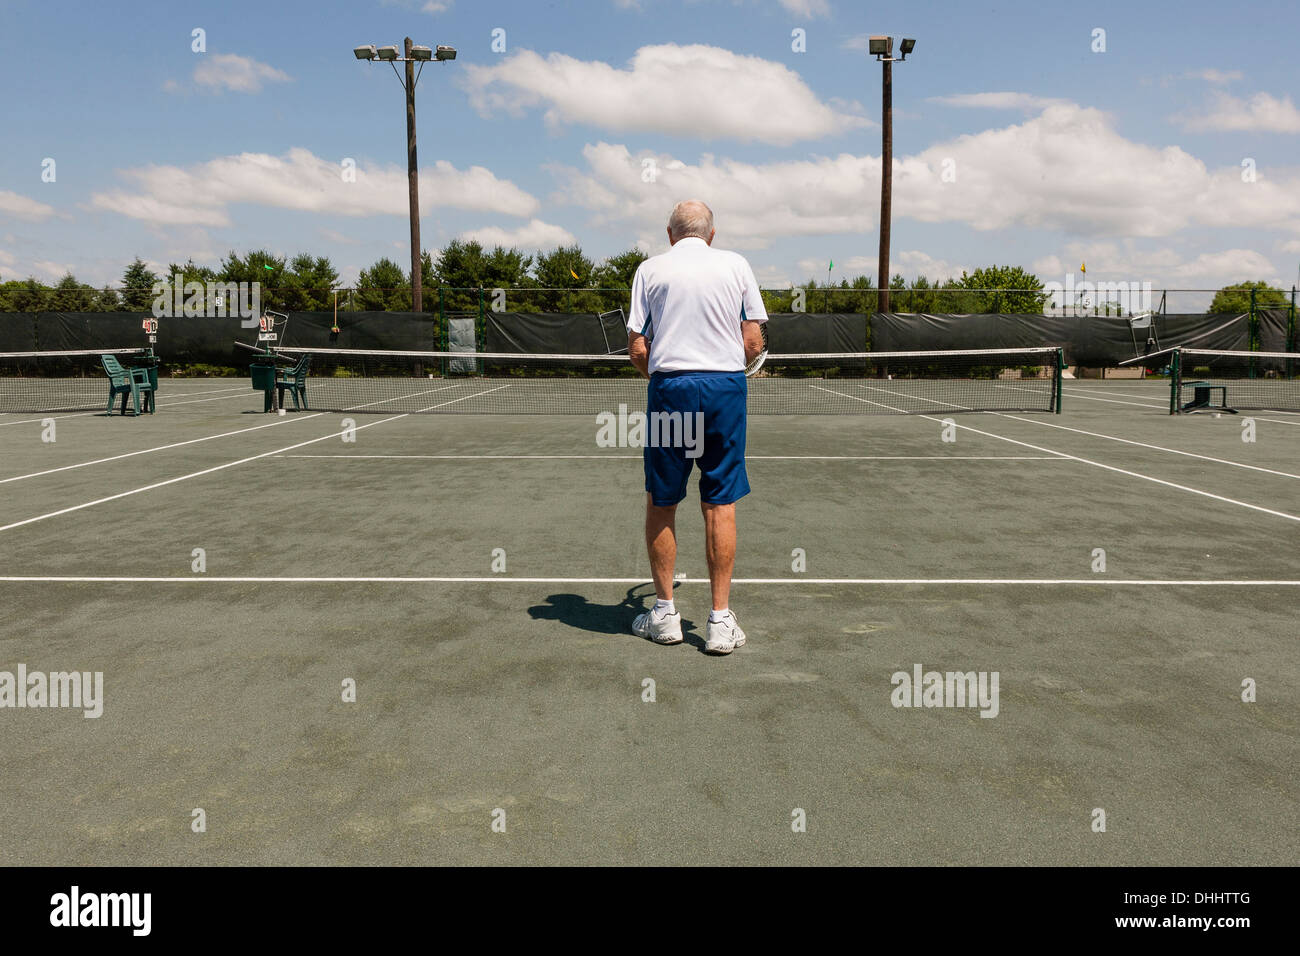 Rear view of senior man on tennis court Stock Photo